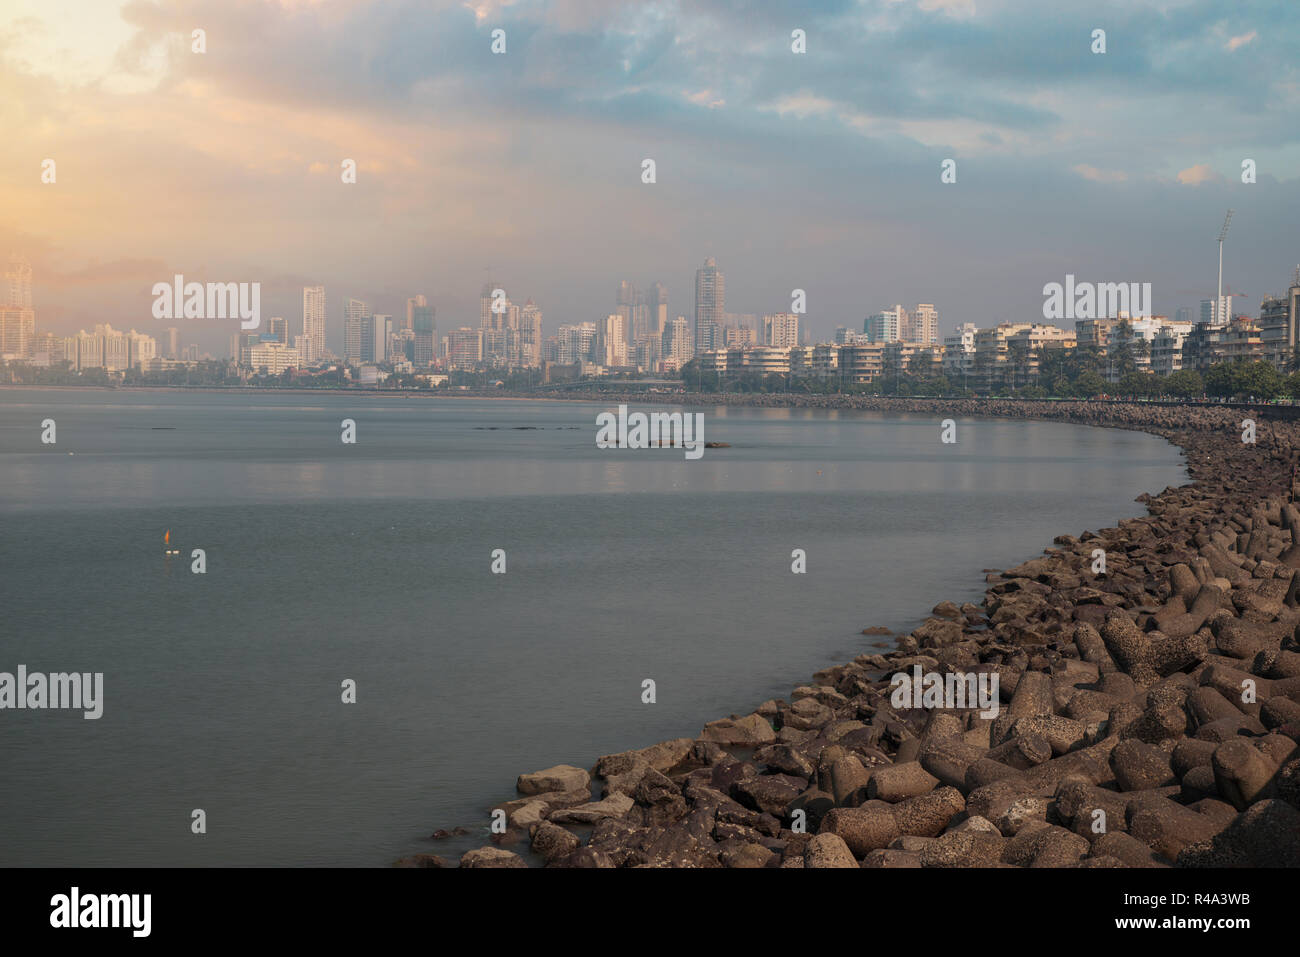 Marine Drive - quay Mumbai (Bombay). It has a crescent shape. India Stock Photo